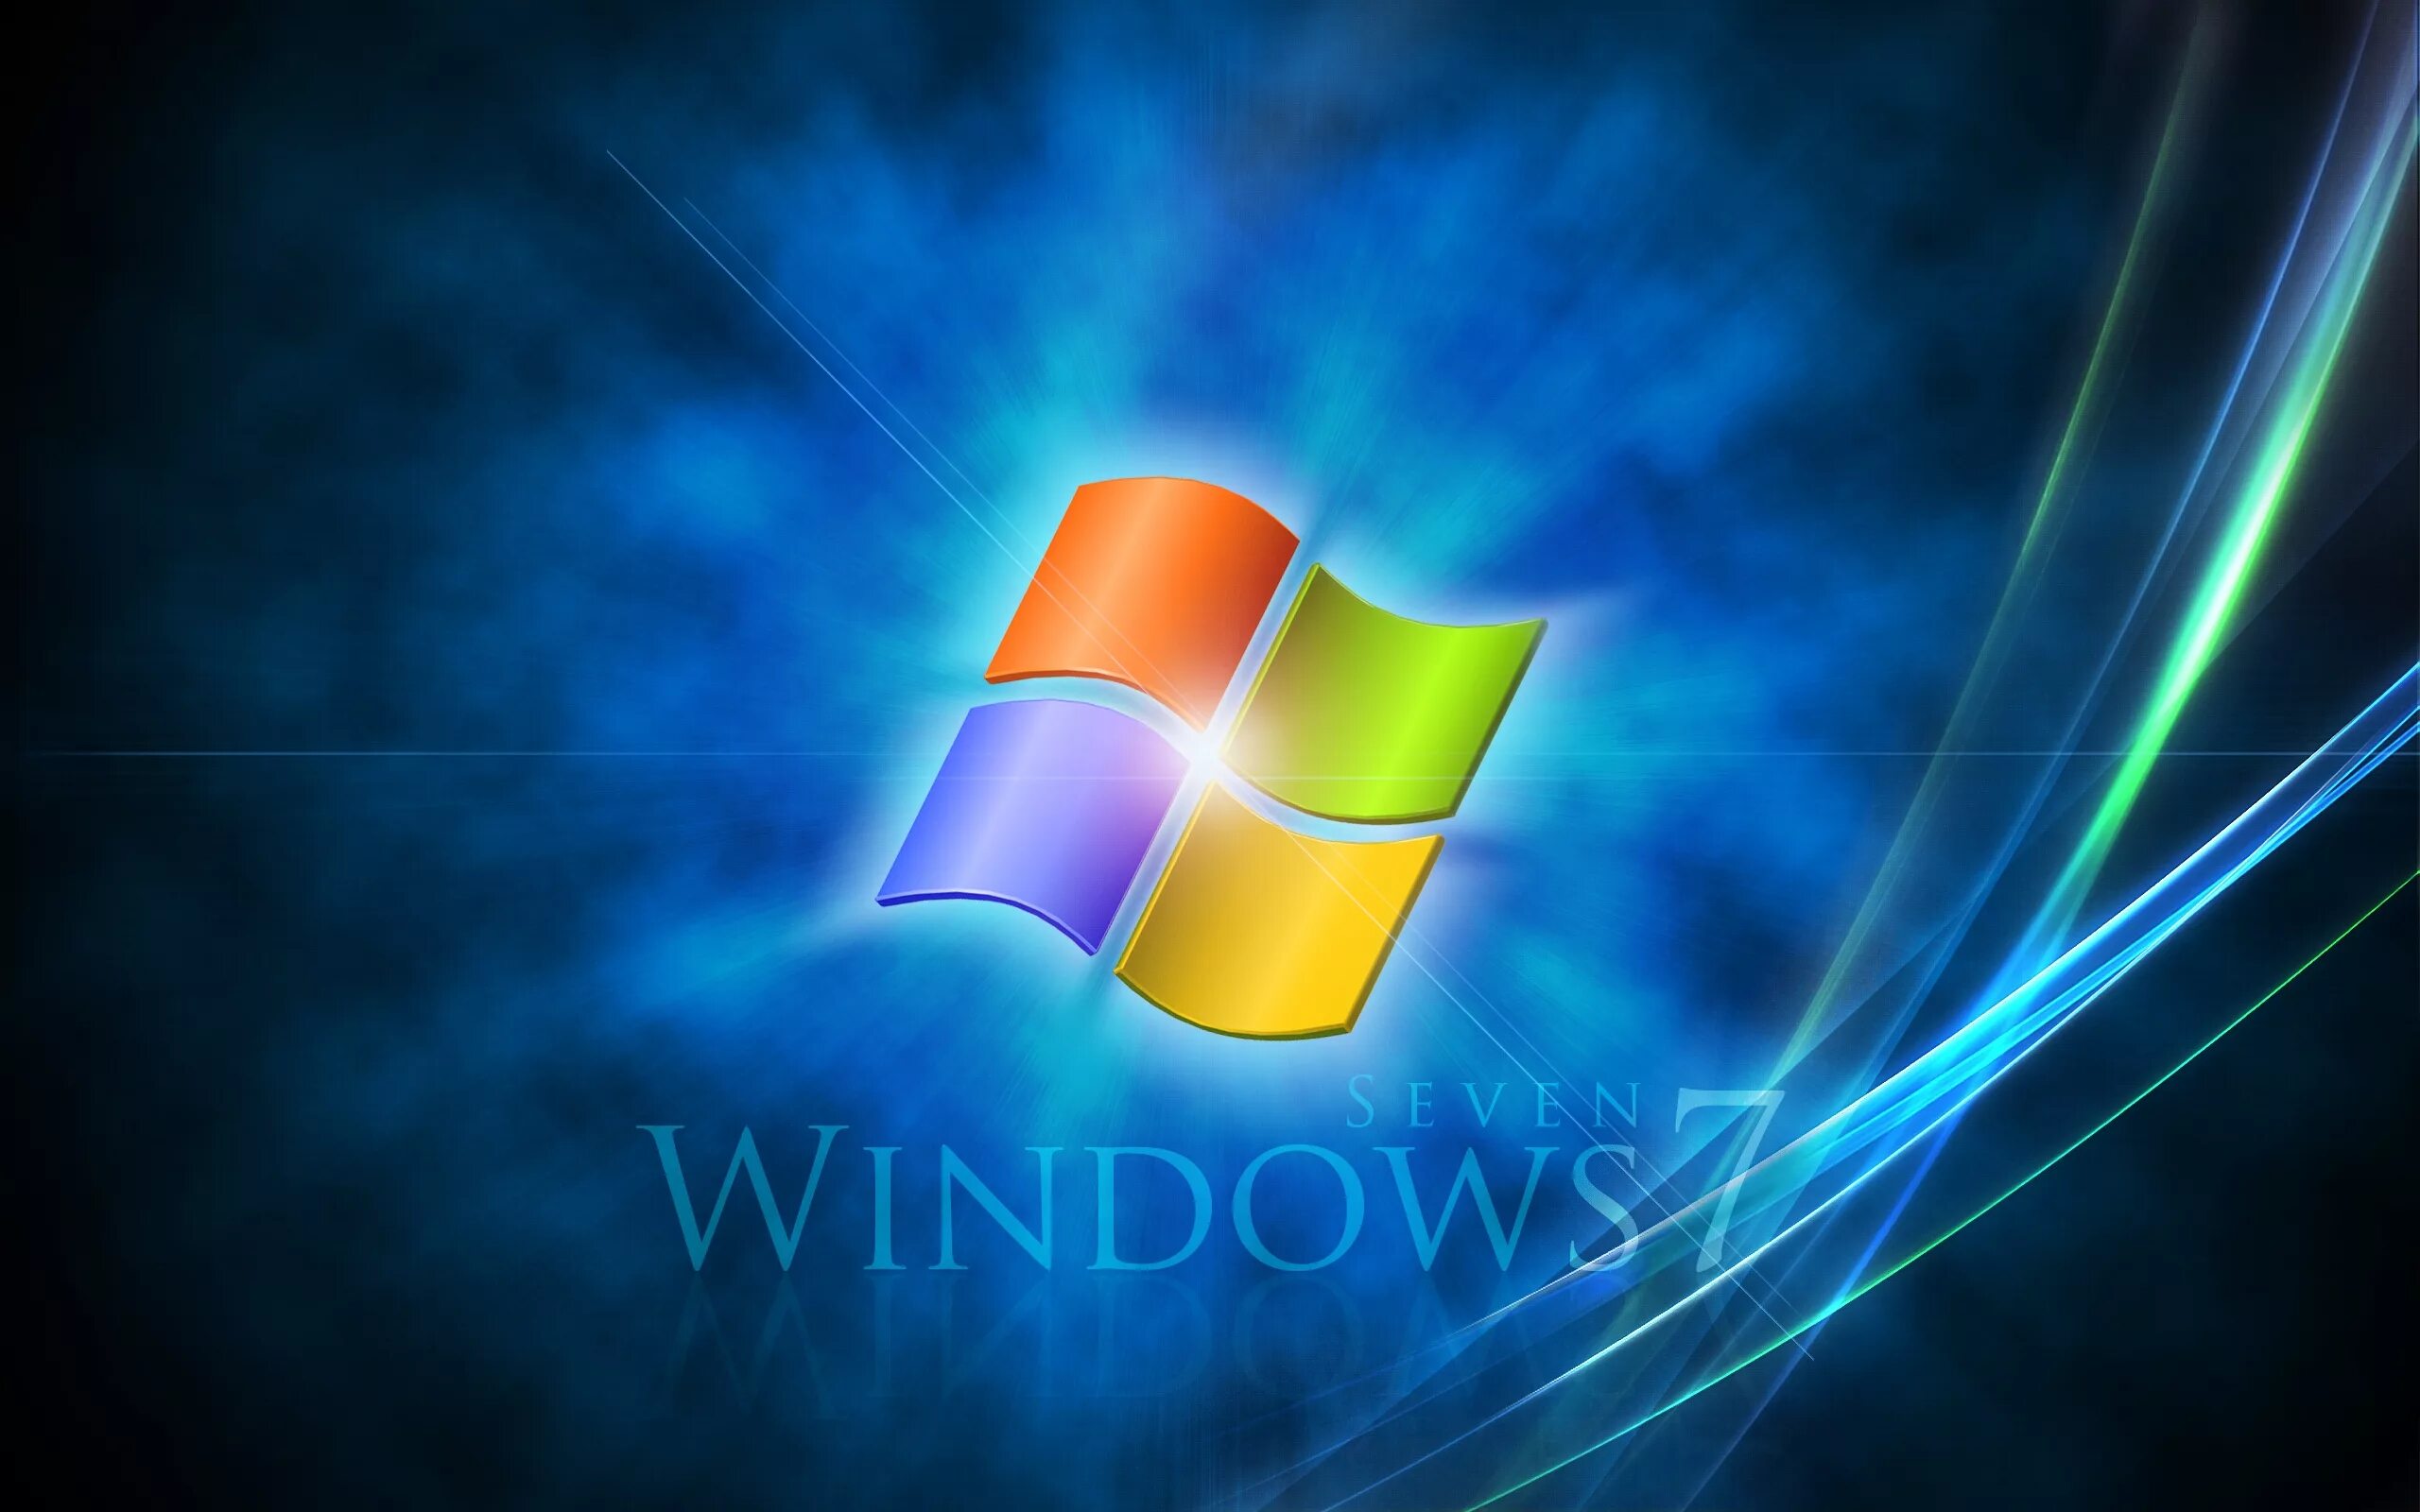 Виндовс 7. Windows 7 рабочий стол. Логотип Windows. Заставка виндовс. Windows bt windows 7